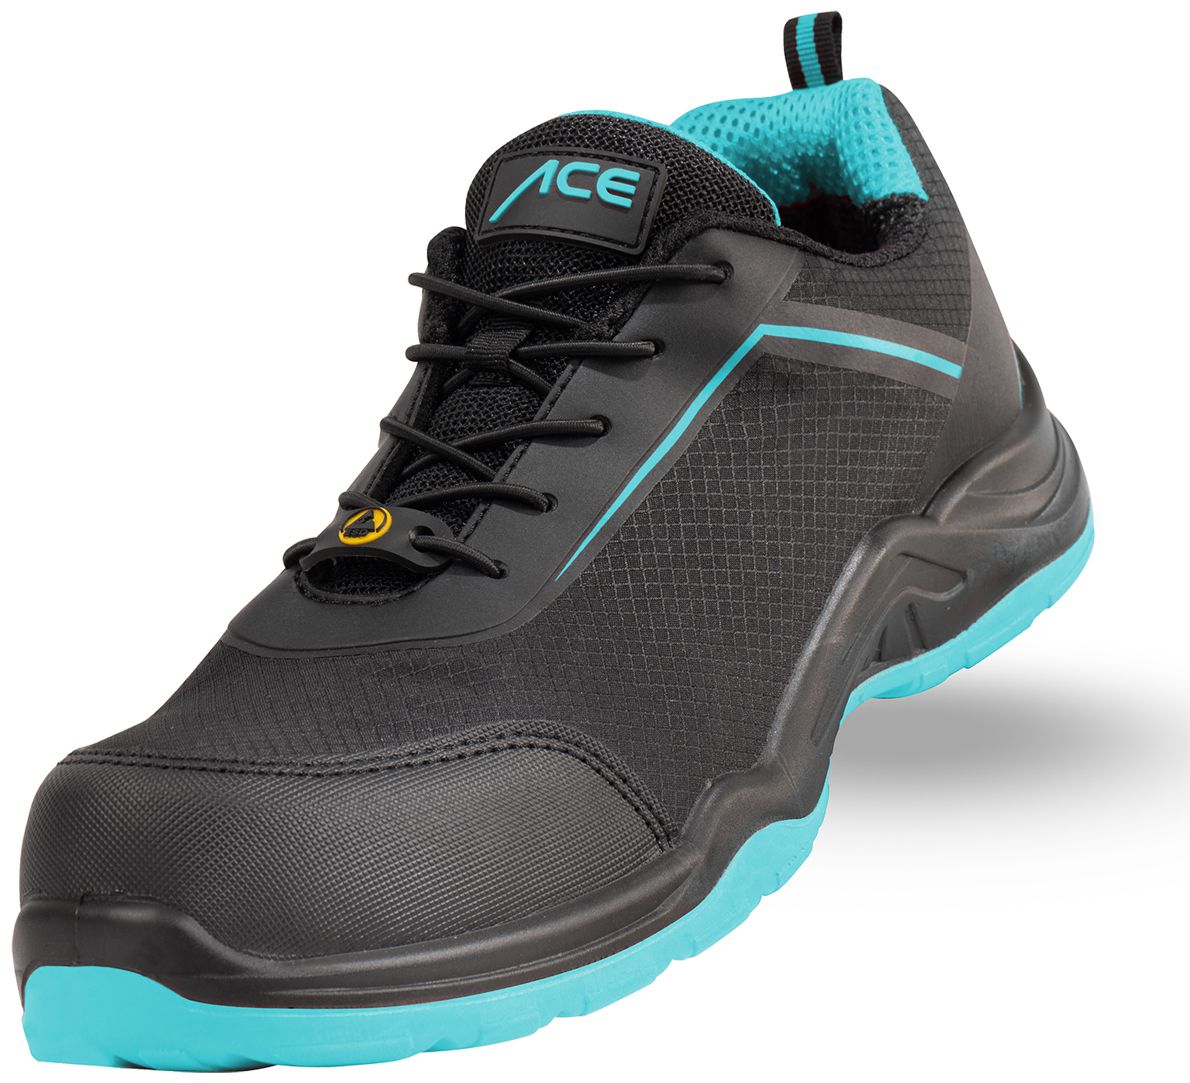 ACE Sapphire S1-P-Arbeits-Sneakers - mit Kunststoffkappe - Sicherheits-Schuhe für die Arbeit  - Schwarz/Blau - 39